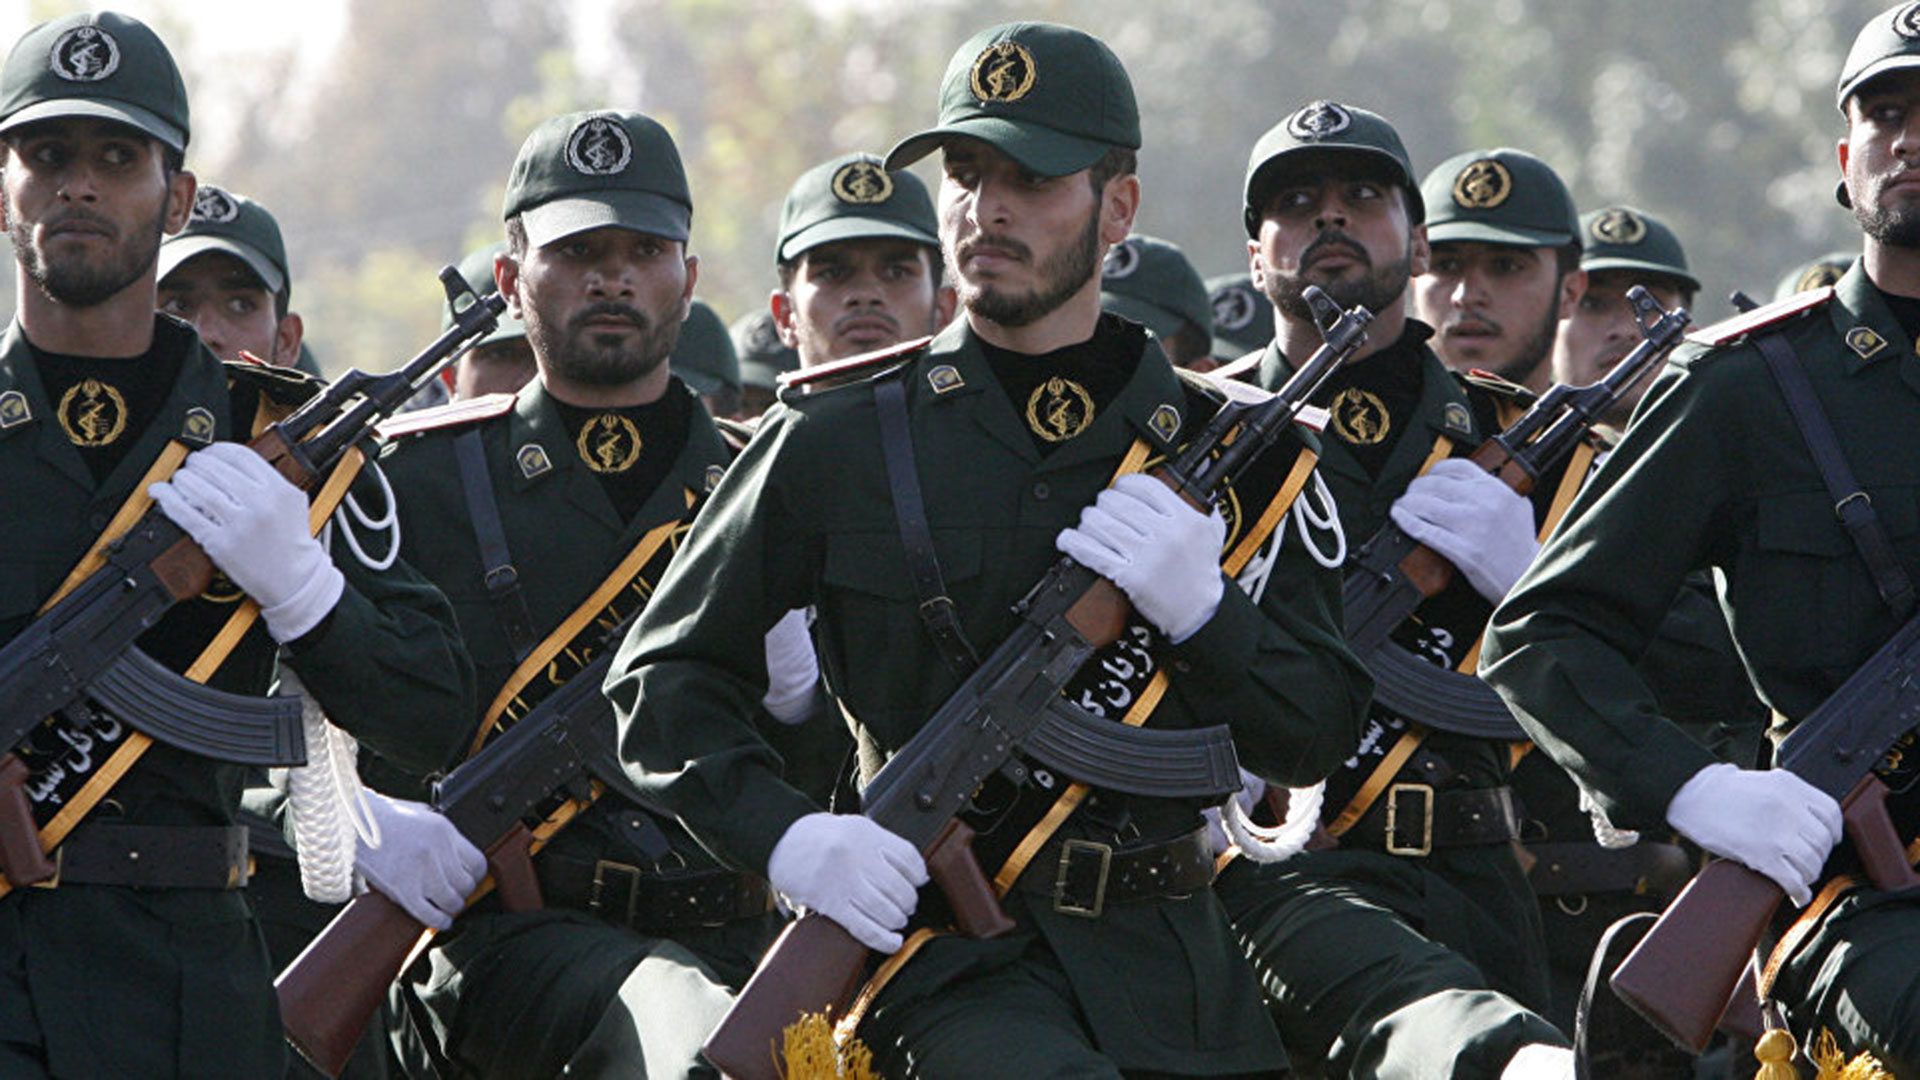 Oficiales de la Guardia Revolucionaria, el cuerpo de élite del ejército de Irán, se encuentran en Siria respaldando a la dictadura de Al Assad